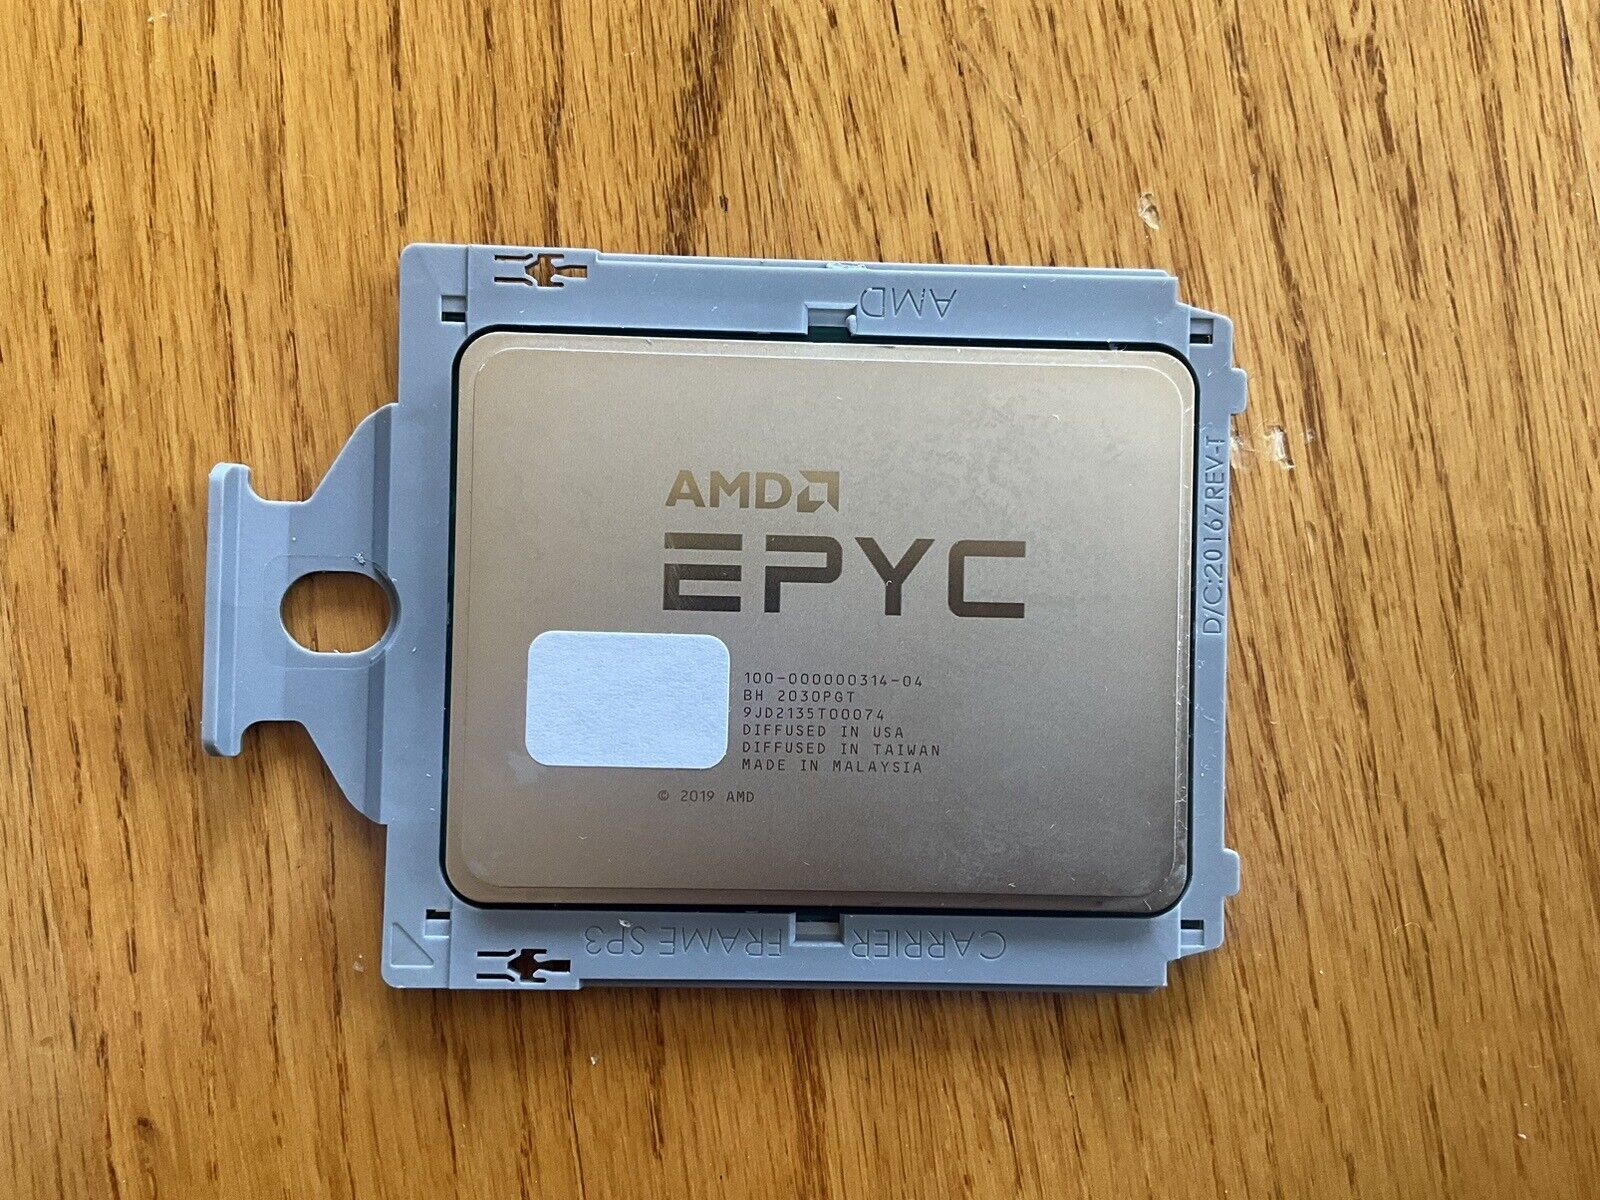 100-000000314-04 AMD EPYC 7763 64-Core 2.45GHz ES Processor